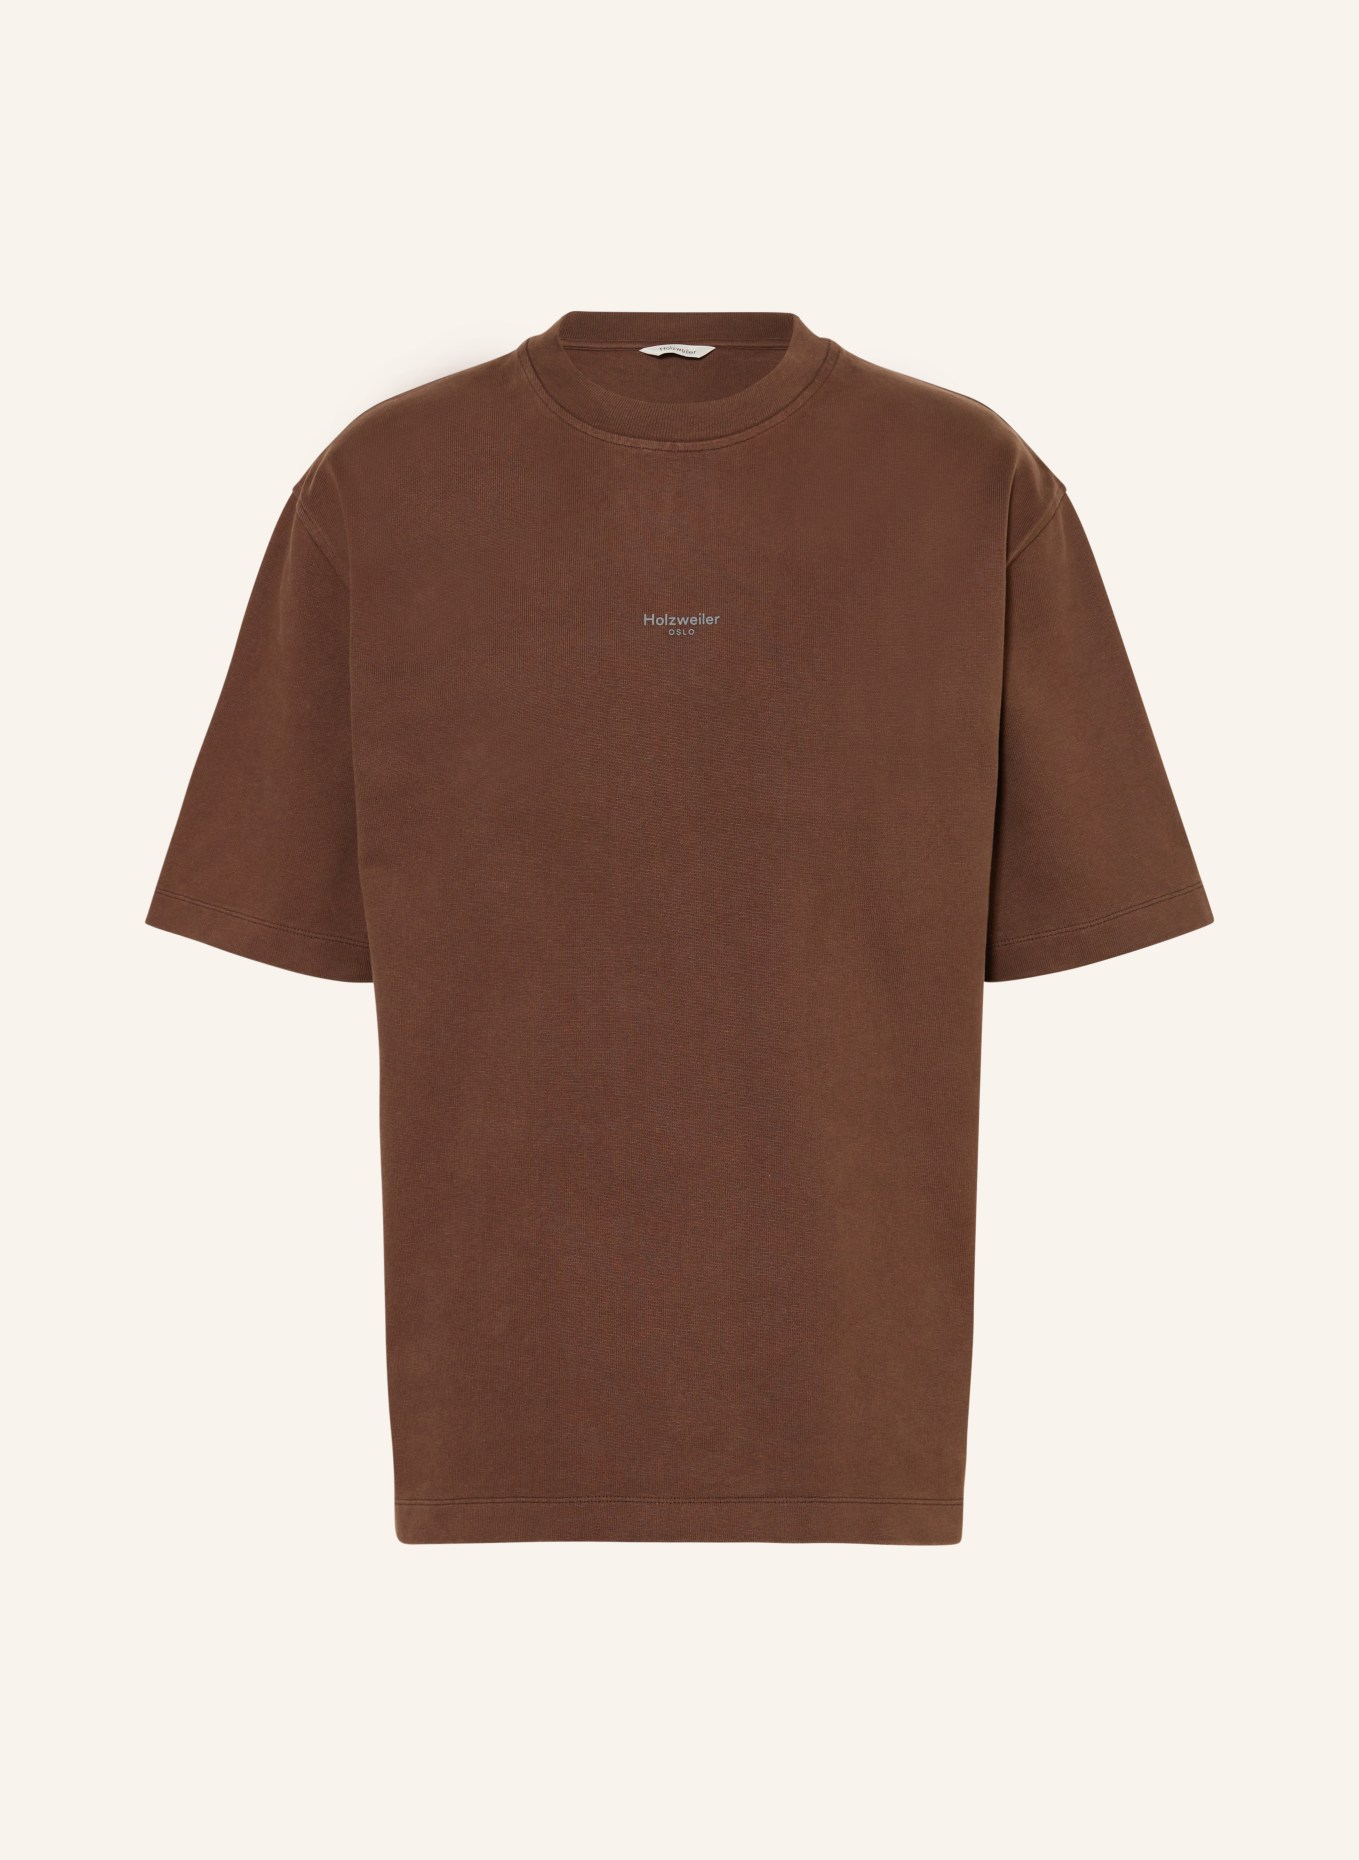 HOLZWEILER T-Shirt RANGER, Farbe: DUNKELBRAUN (Bild 1)